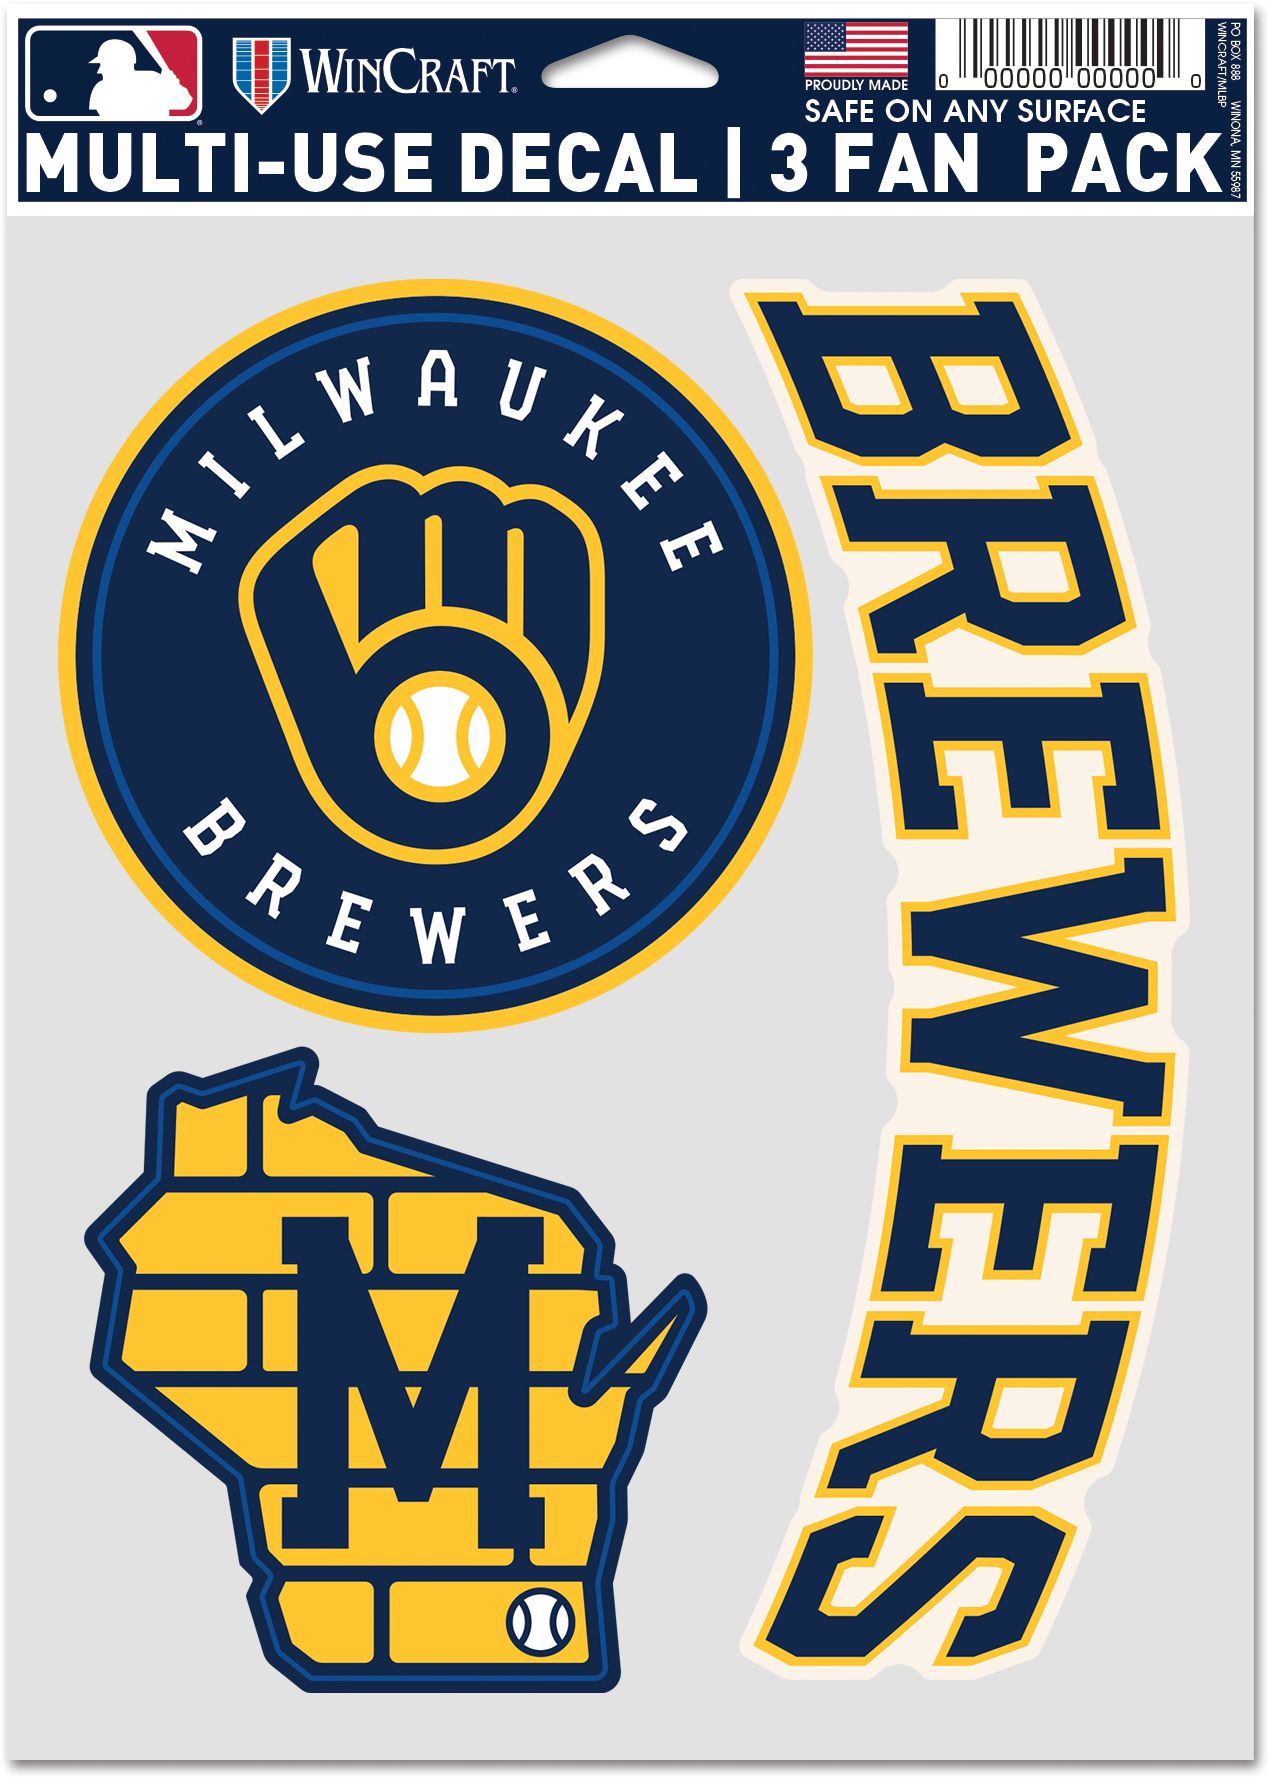 Logo Brands Milwaukee Brewers 14oz. Relief Mug